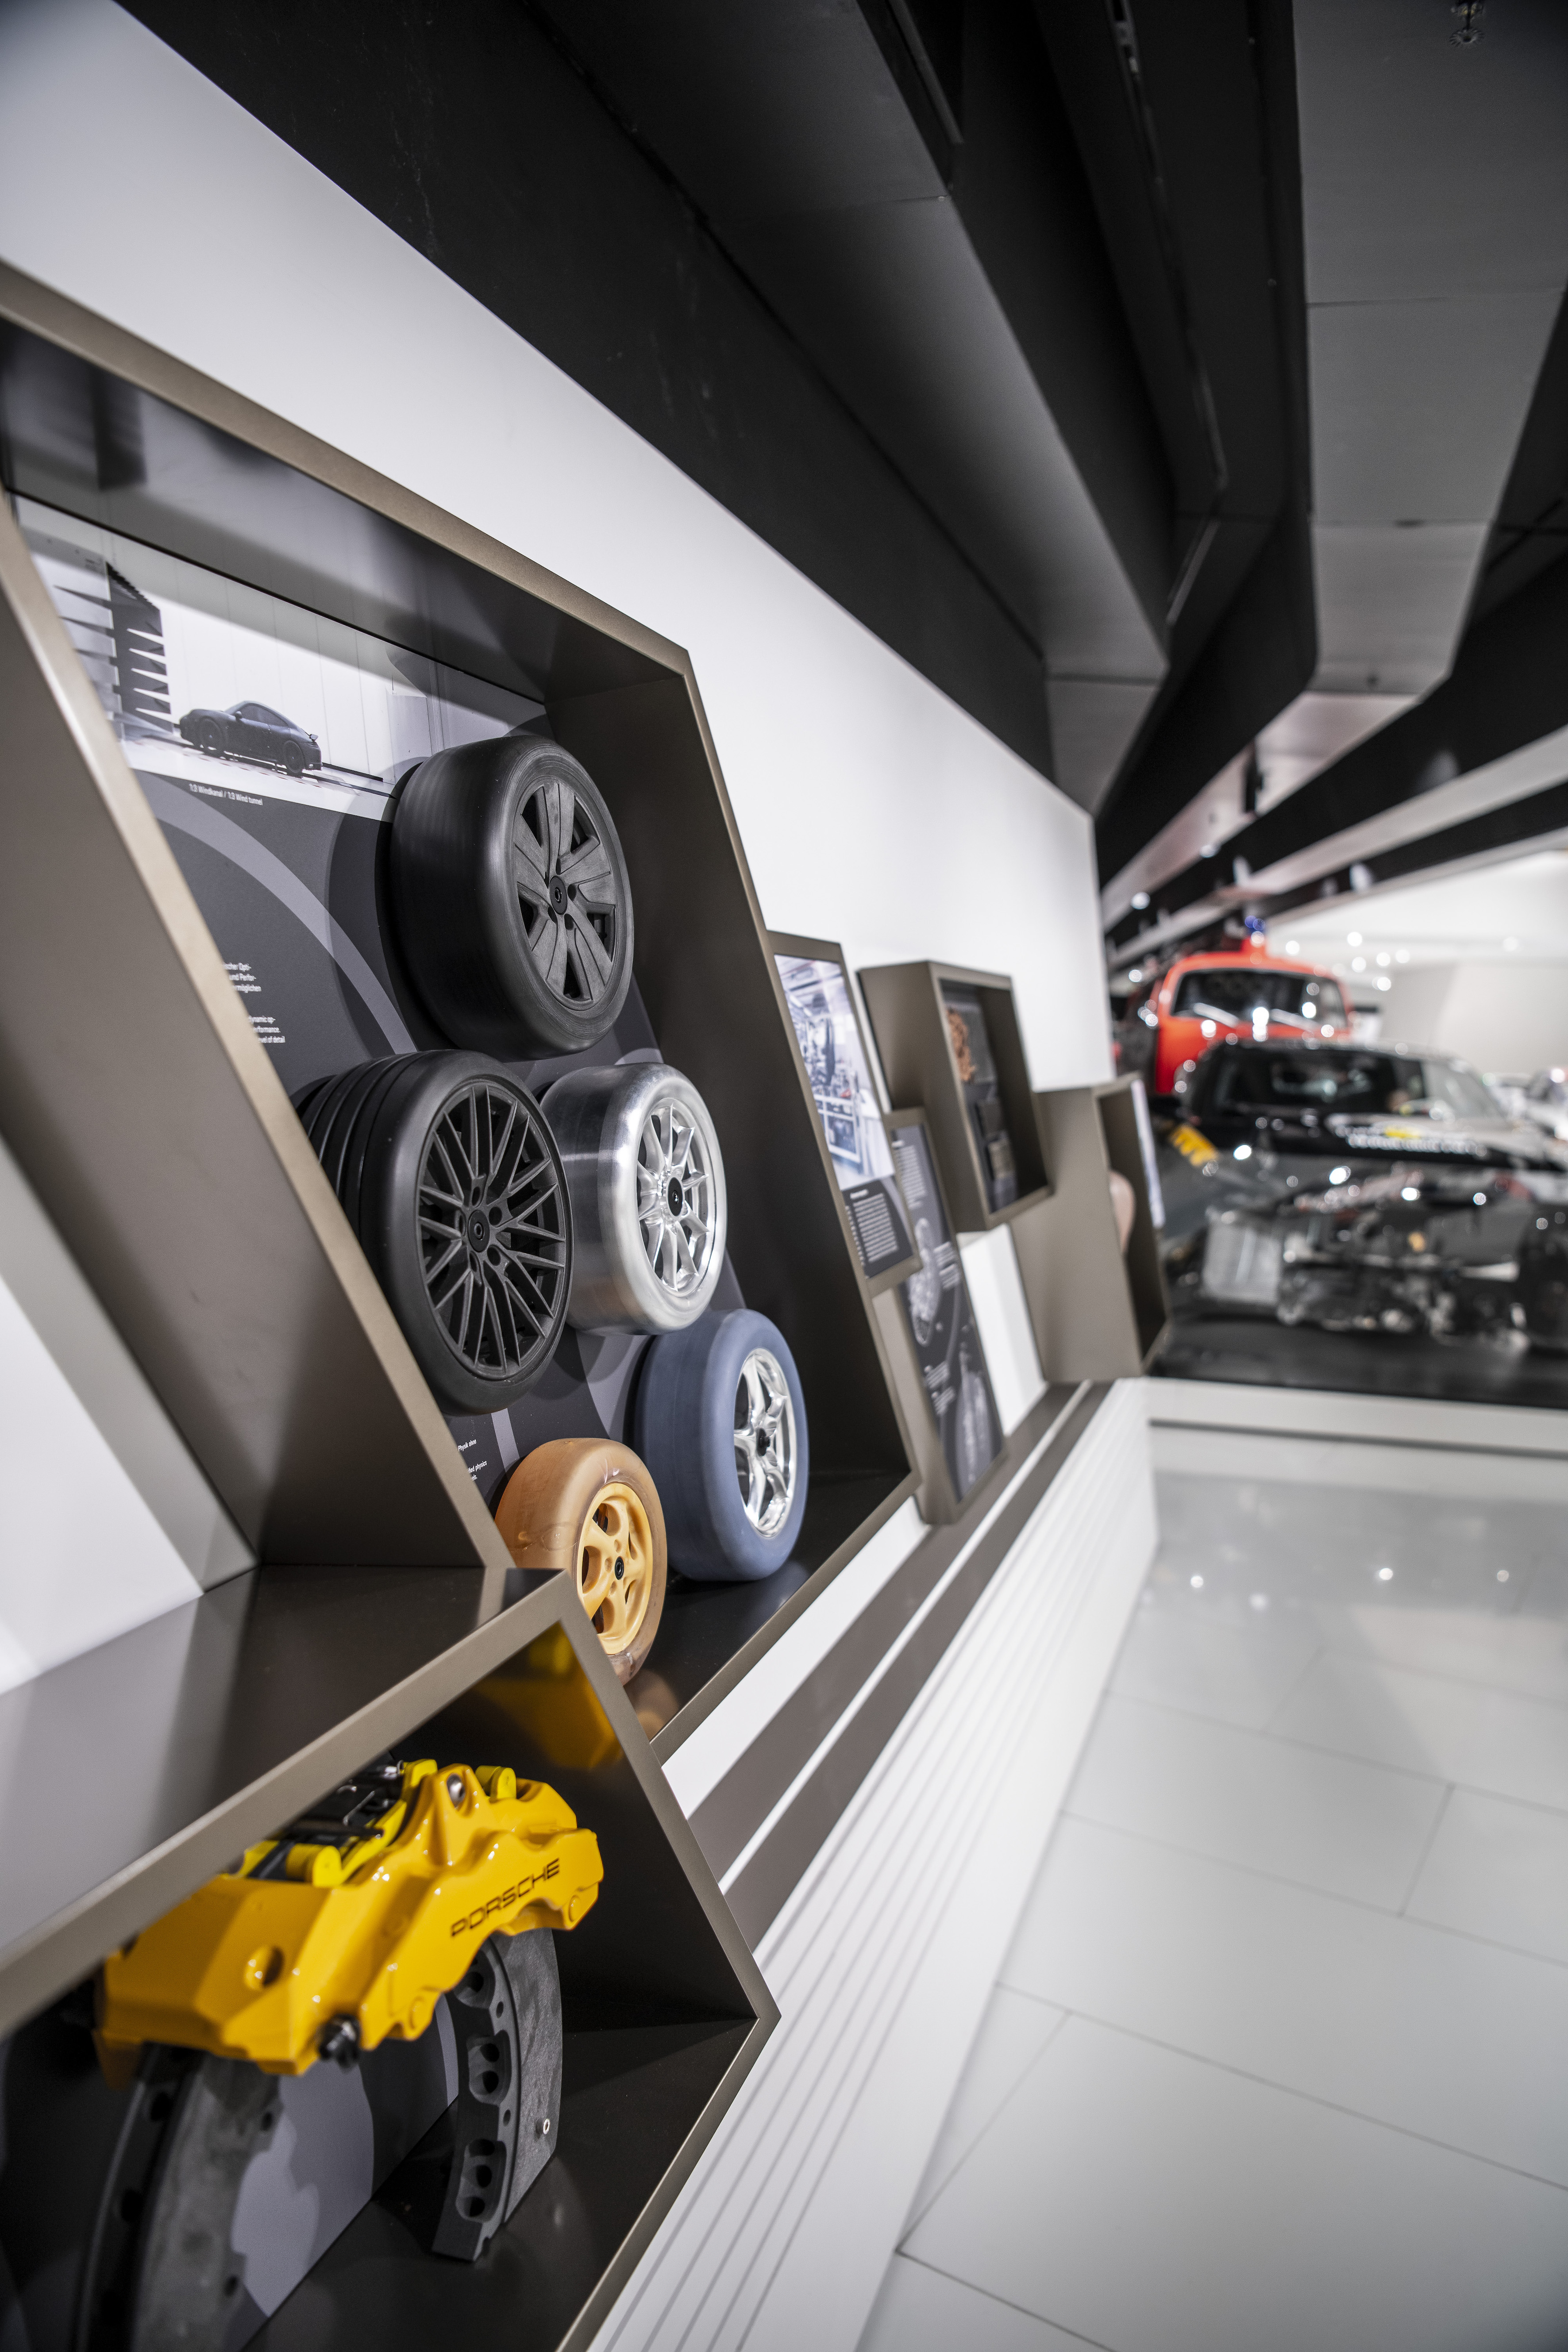 Special exhibition “50 years of Porsche Development at Weissach”, 2021, Porsche AG